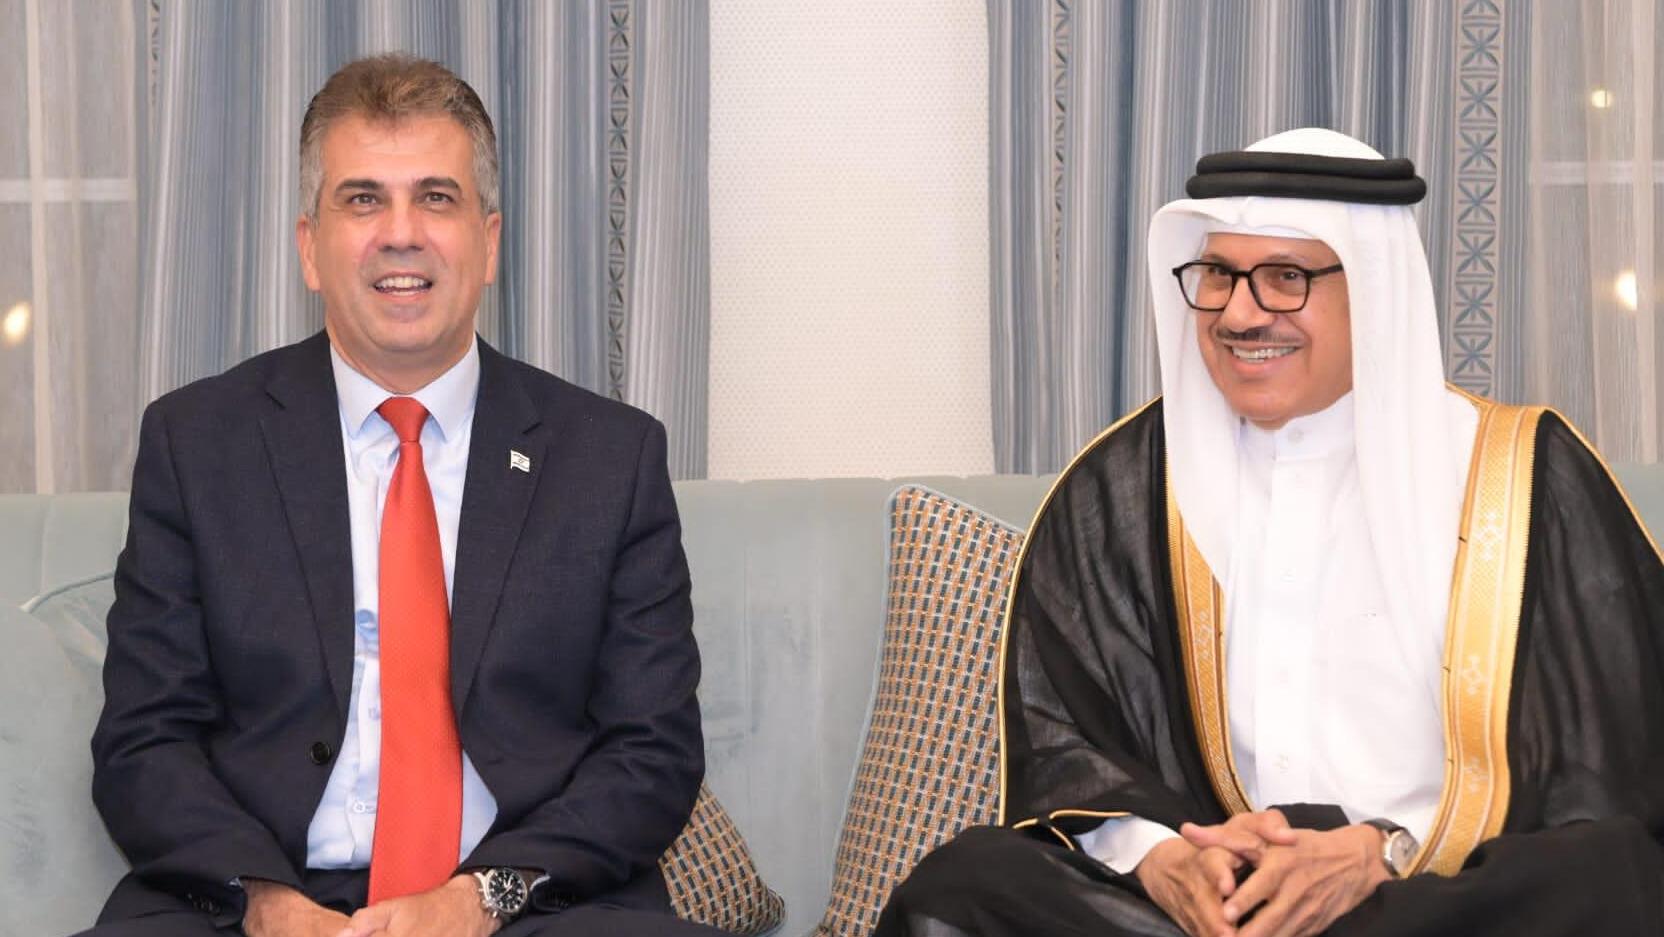 שר החוץ אלי כהן בפגישה עם שר החוץ של בחריין עבדלעטיף בין ראשיד אל זיאני